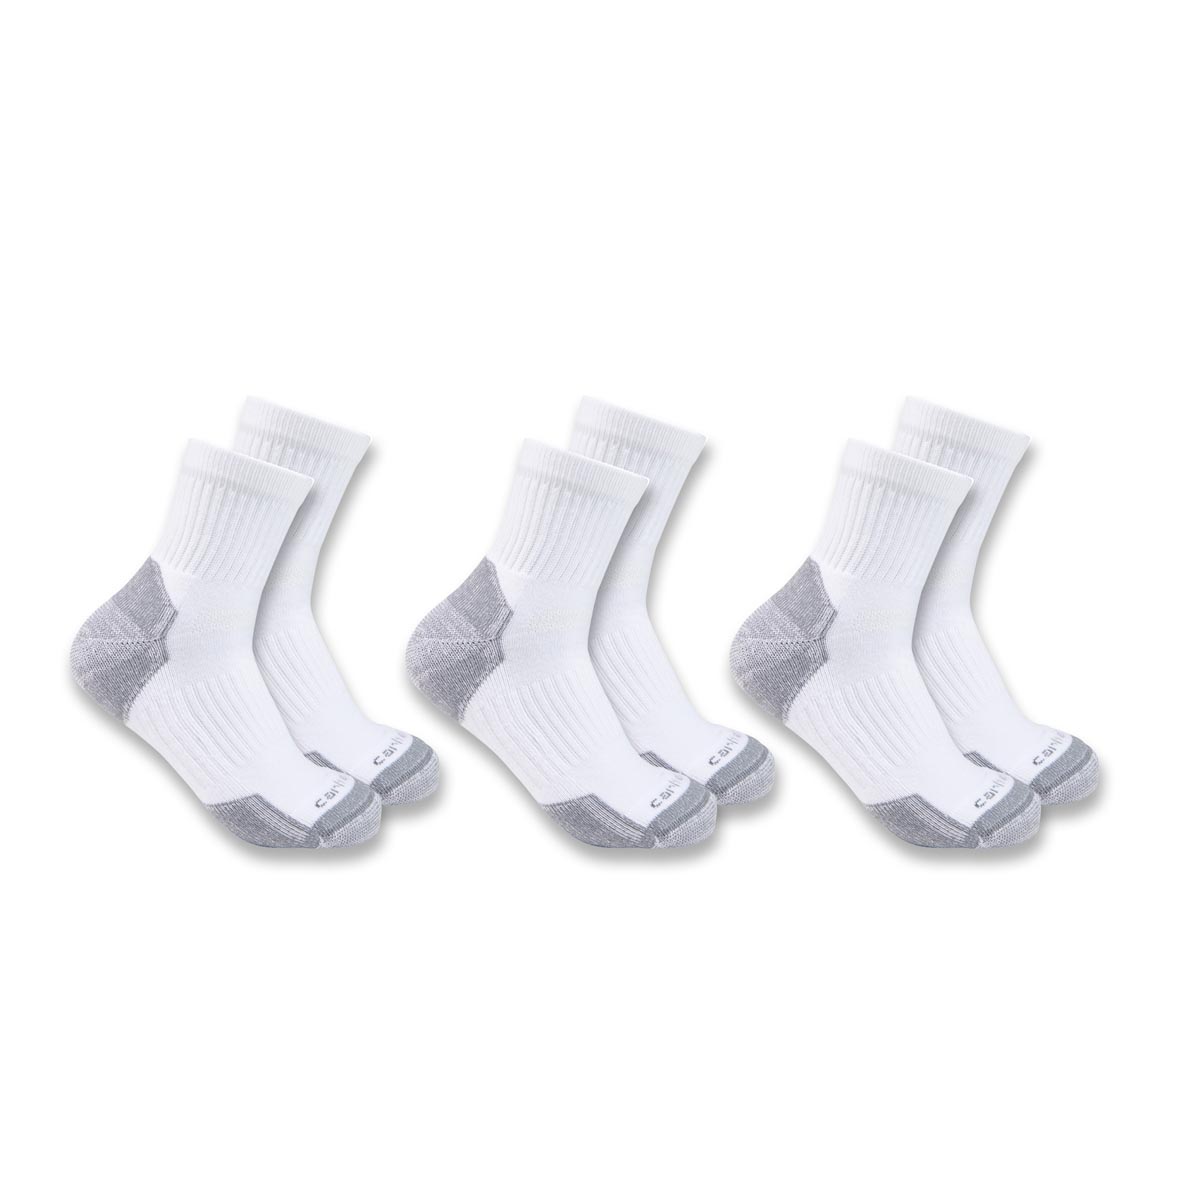 Carhartt Men's Lightweight Cotton Blend Quarter Sock 3 Pack